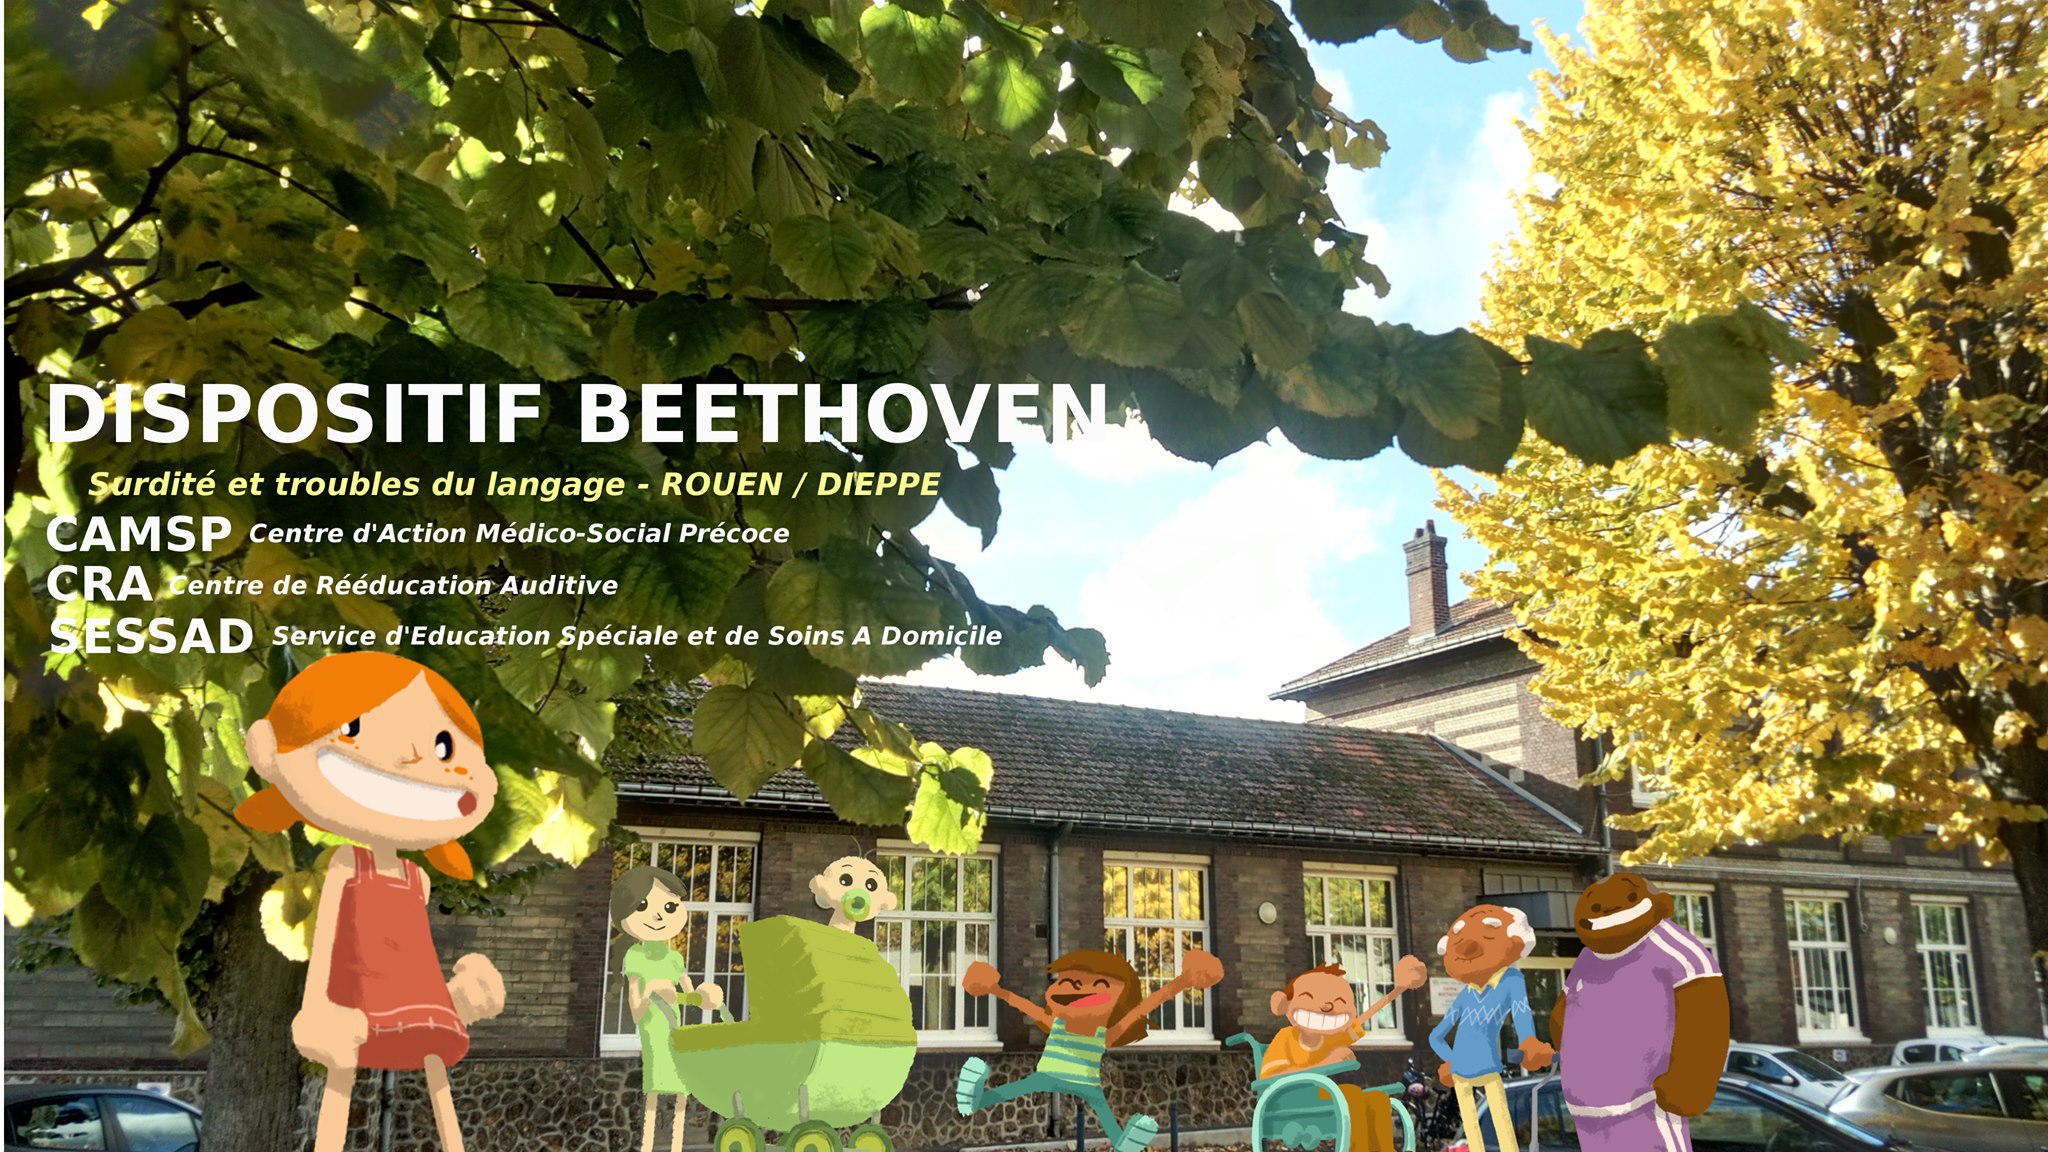 4 orthophonistes (h/f) pour le Dispositif et CAMSP Beethoven